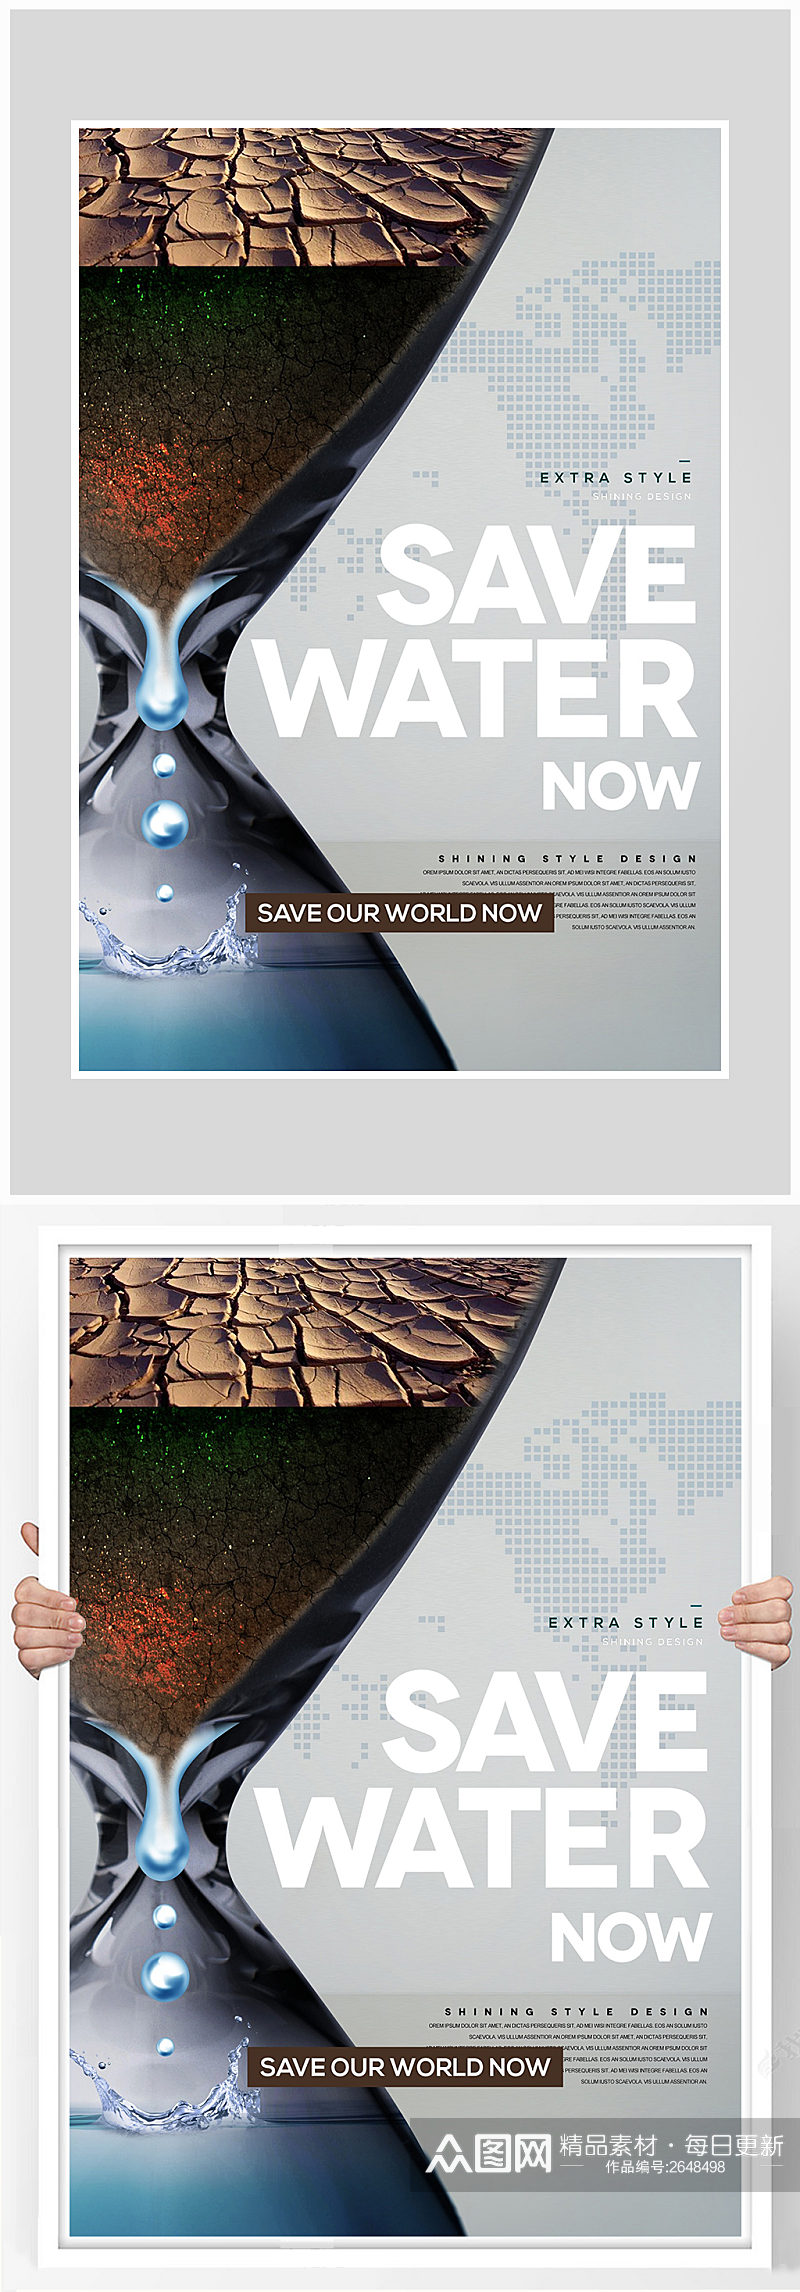 创意唯美水资源保护环境海报设计素材